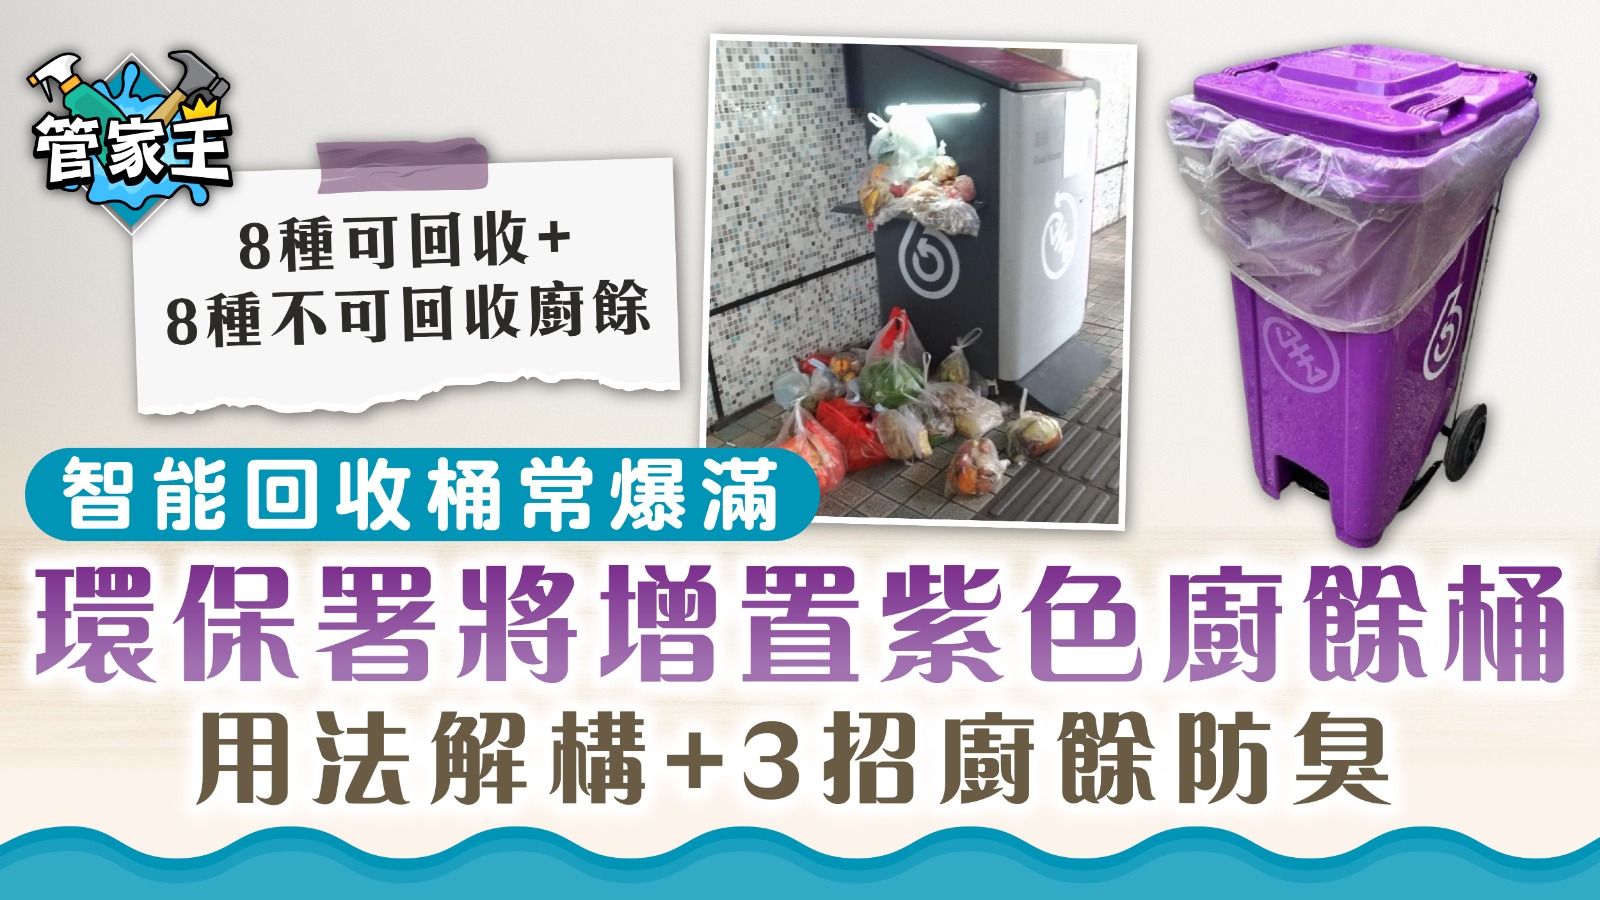 回收廚餘｜智能回收桶常爆滿 環保署將增置紫色廚餘桶 用法解構+3招廚餘防臭